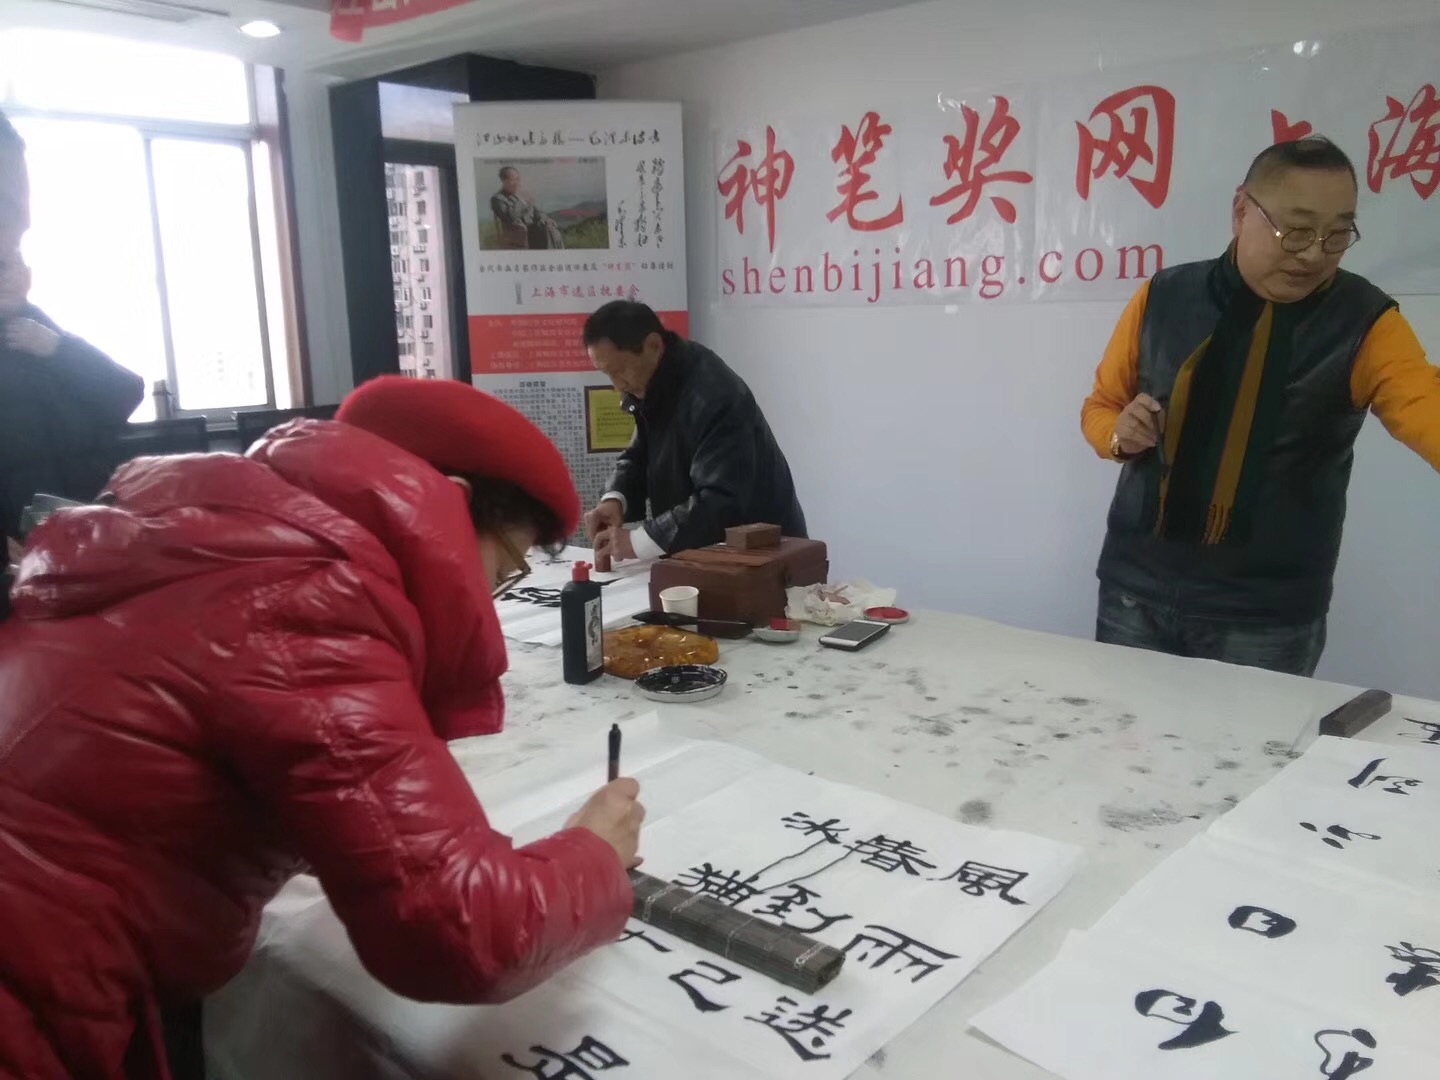 2018年3月6日下午由红色神笔诗书画院上海发起红煊笔会活动